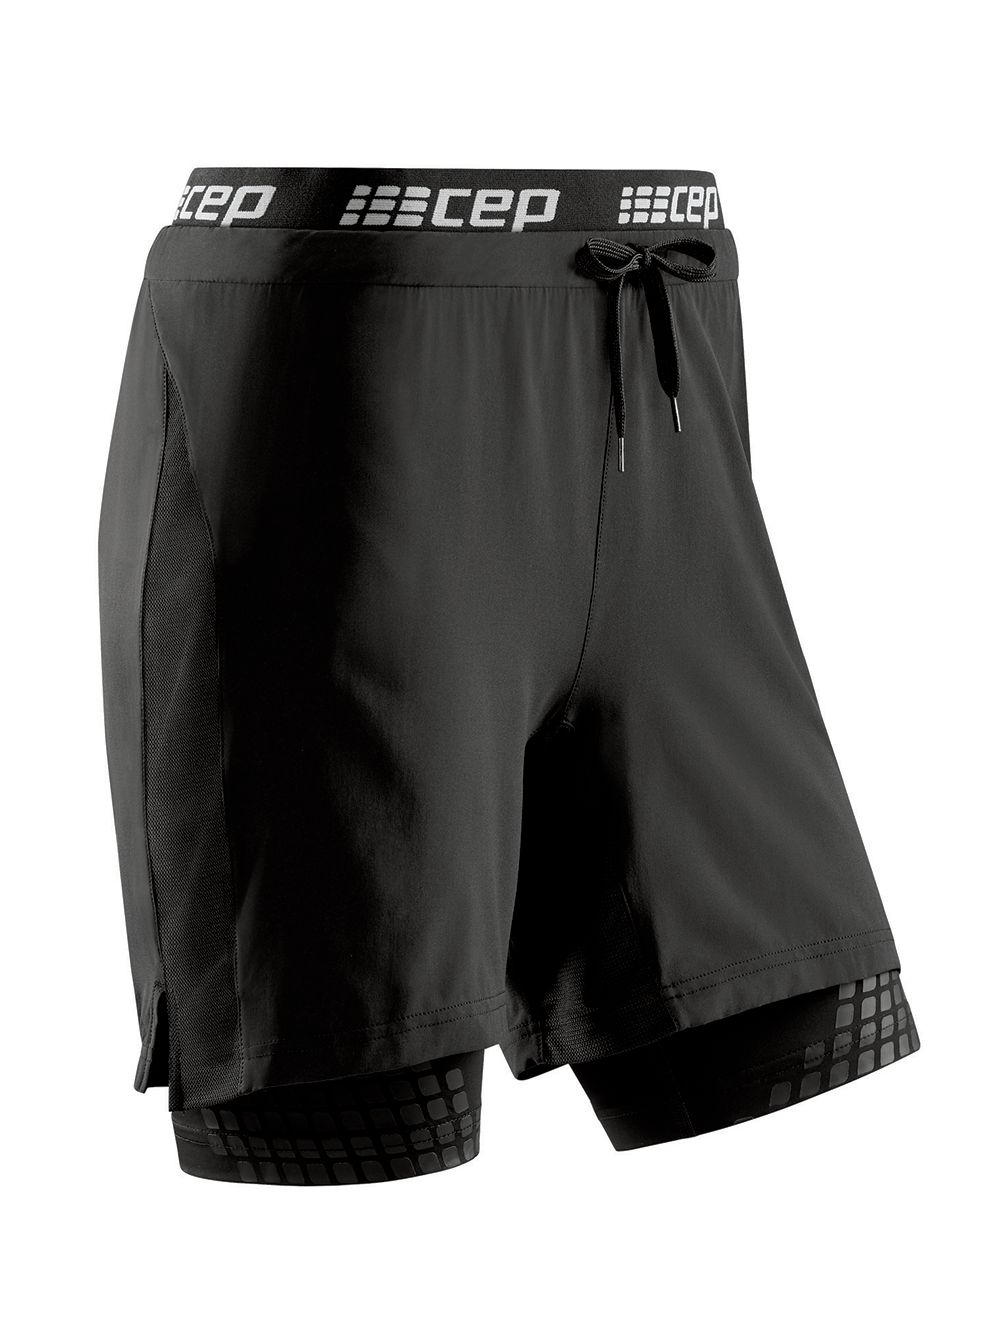 Cпортивные шорты женские CEP C48W-5 черные XS